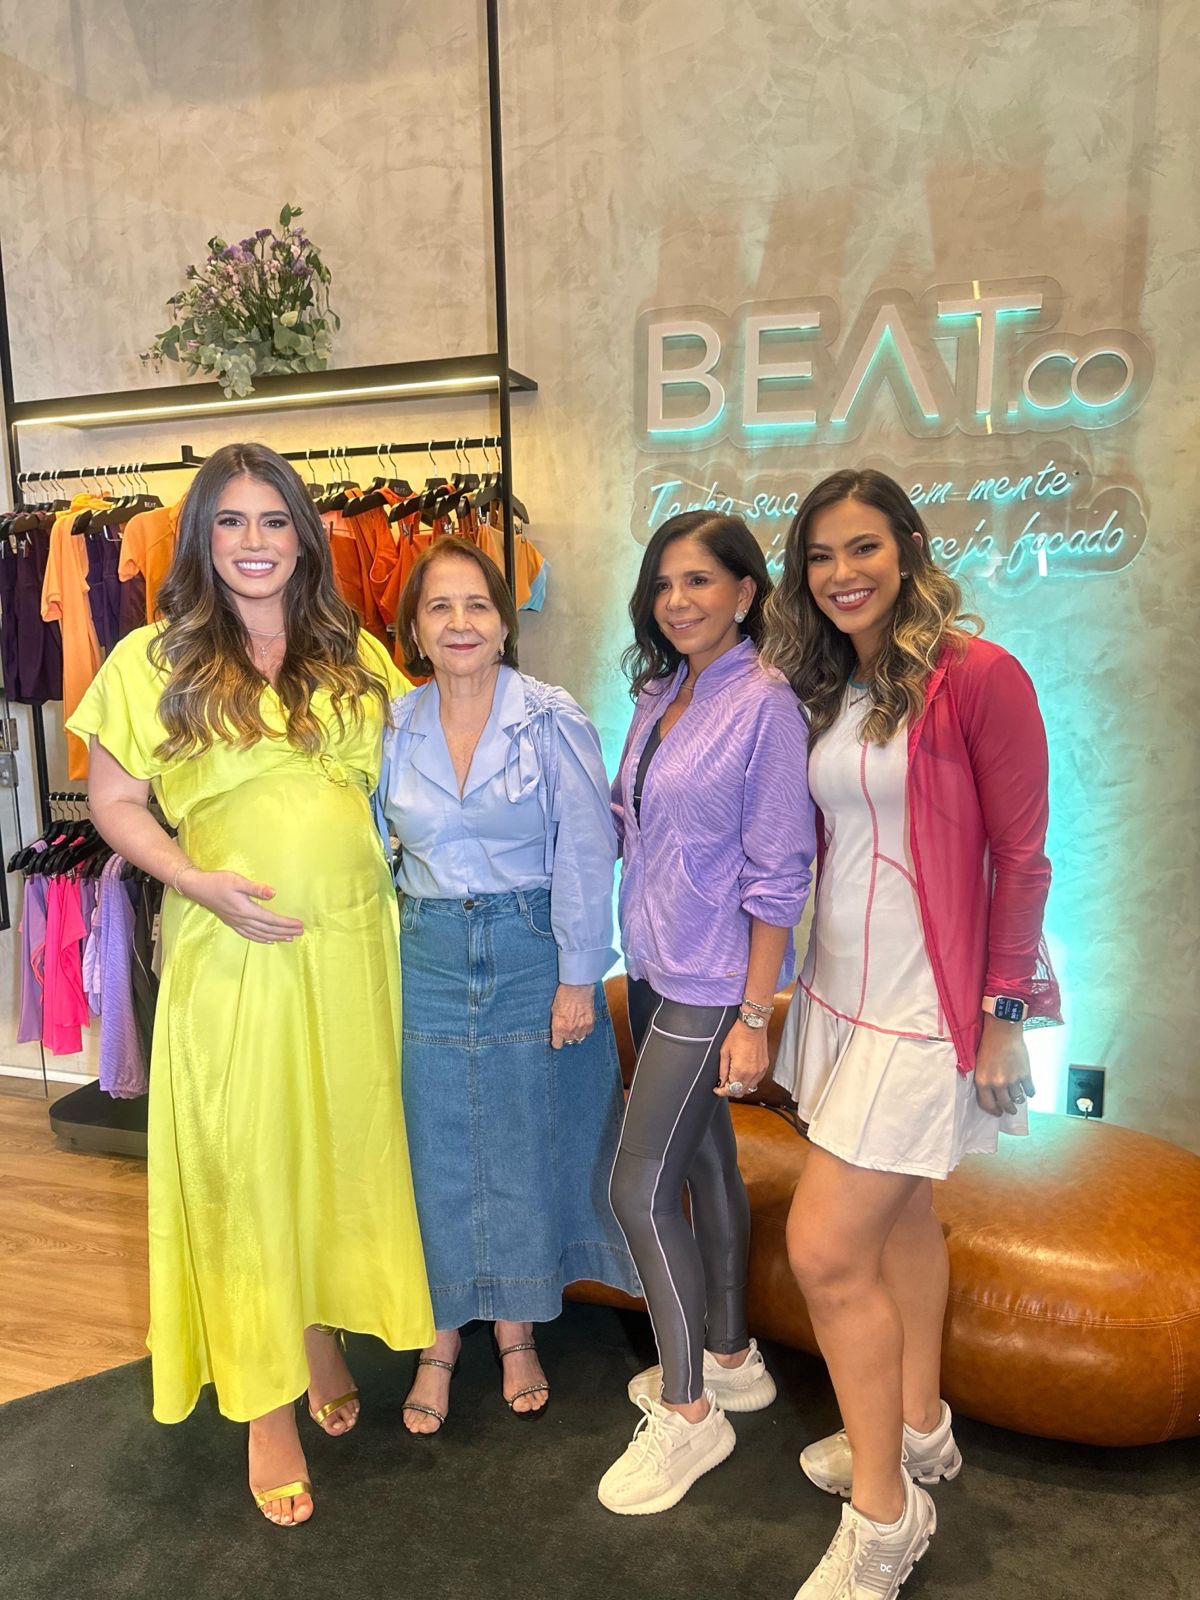 Beat.co Fortaleza reúne queridas clientes para um talk especial com Maria Lúcia Negrão